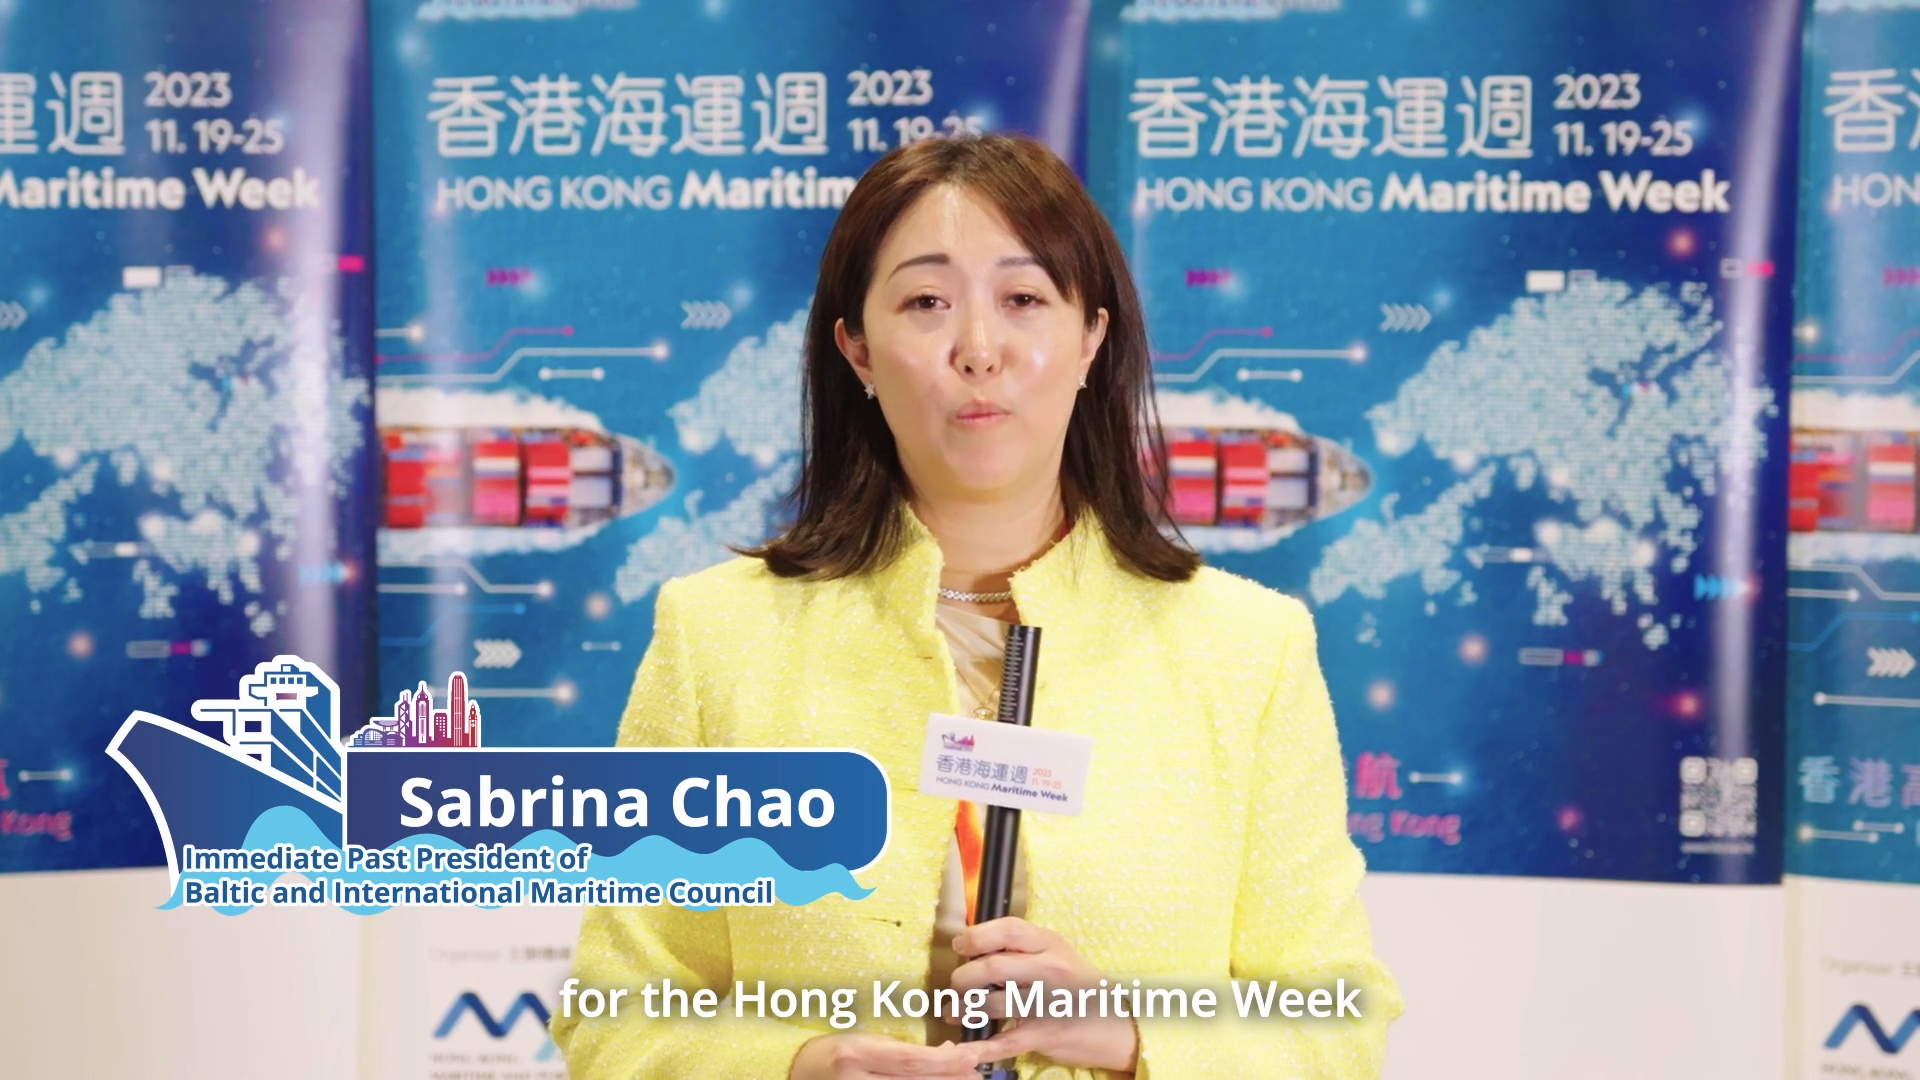 香港海运周2023 - 波罗的海国际航运公会前主席赵式明女士 (只有英文)